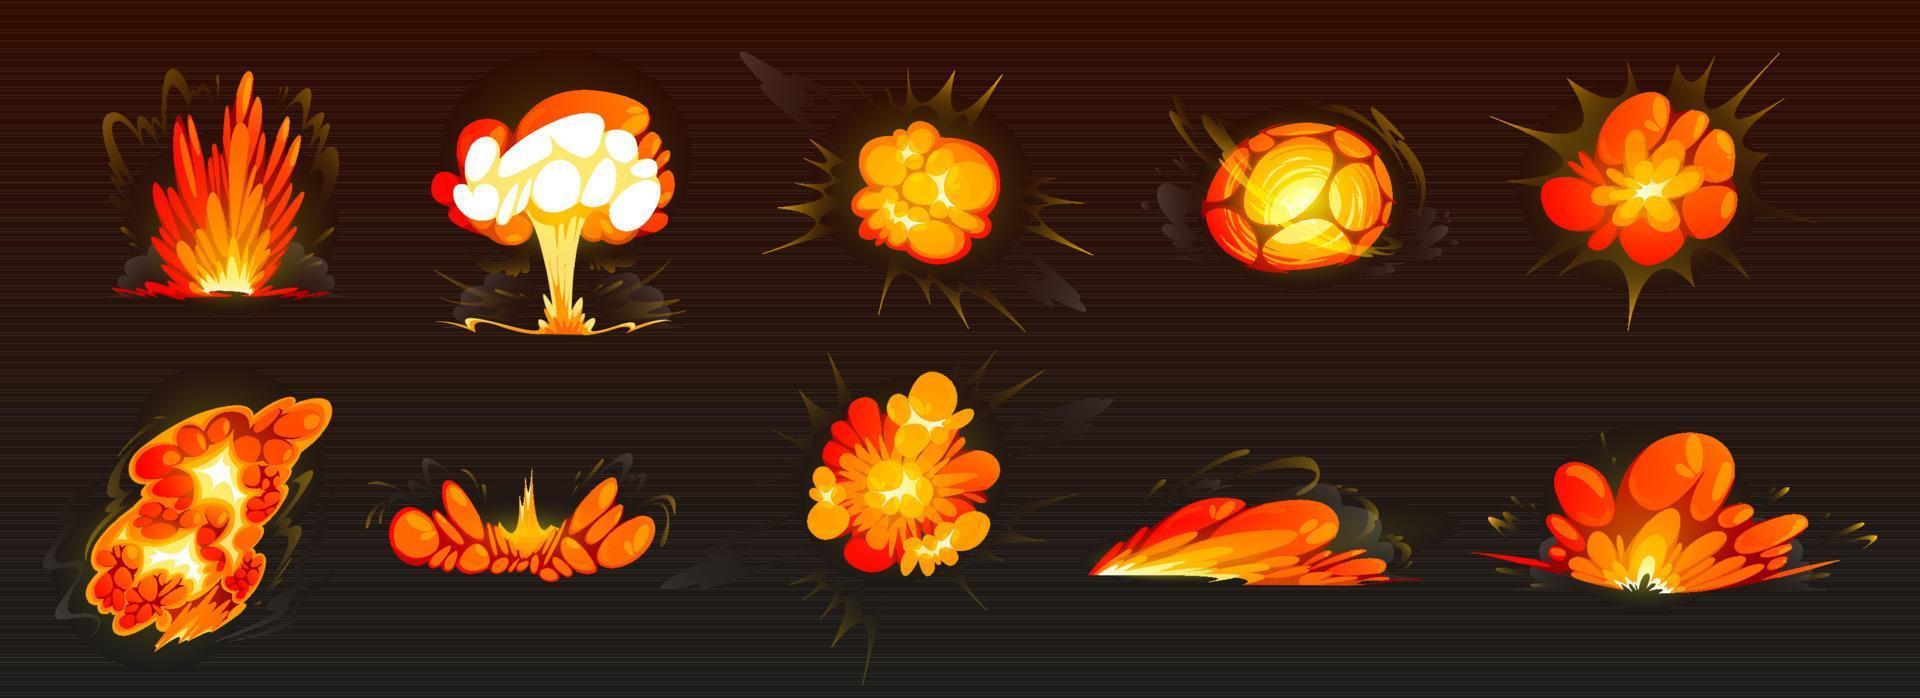 bomba explosioner, brand spricker, kul vektor